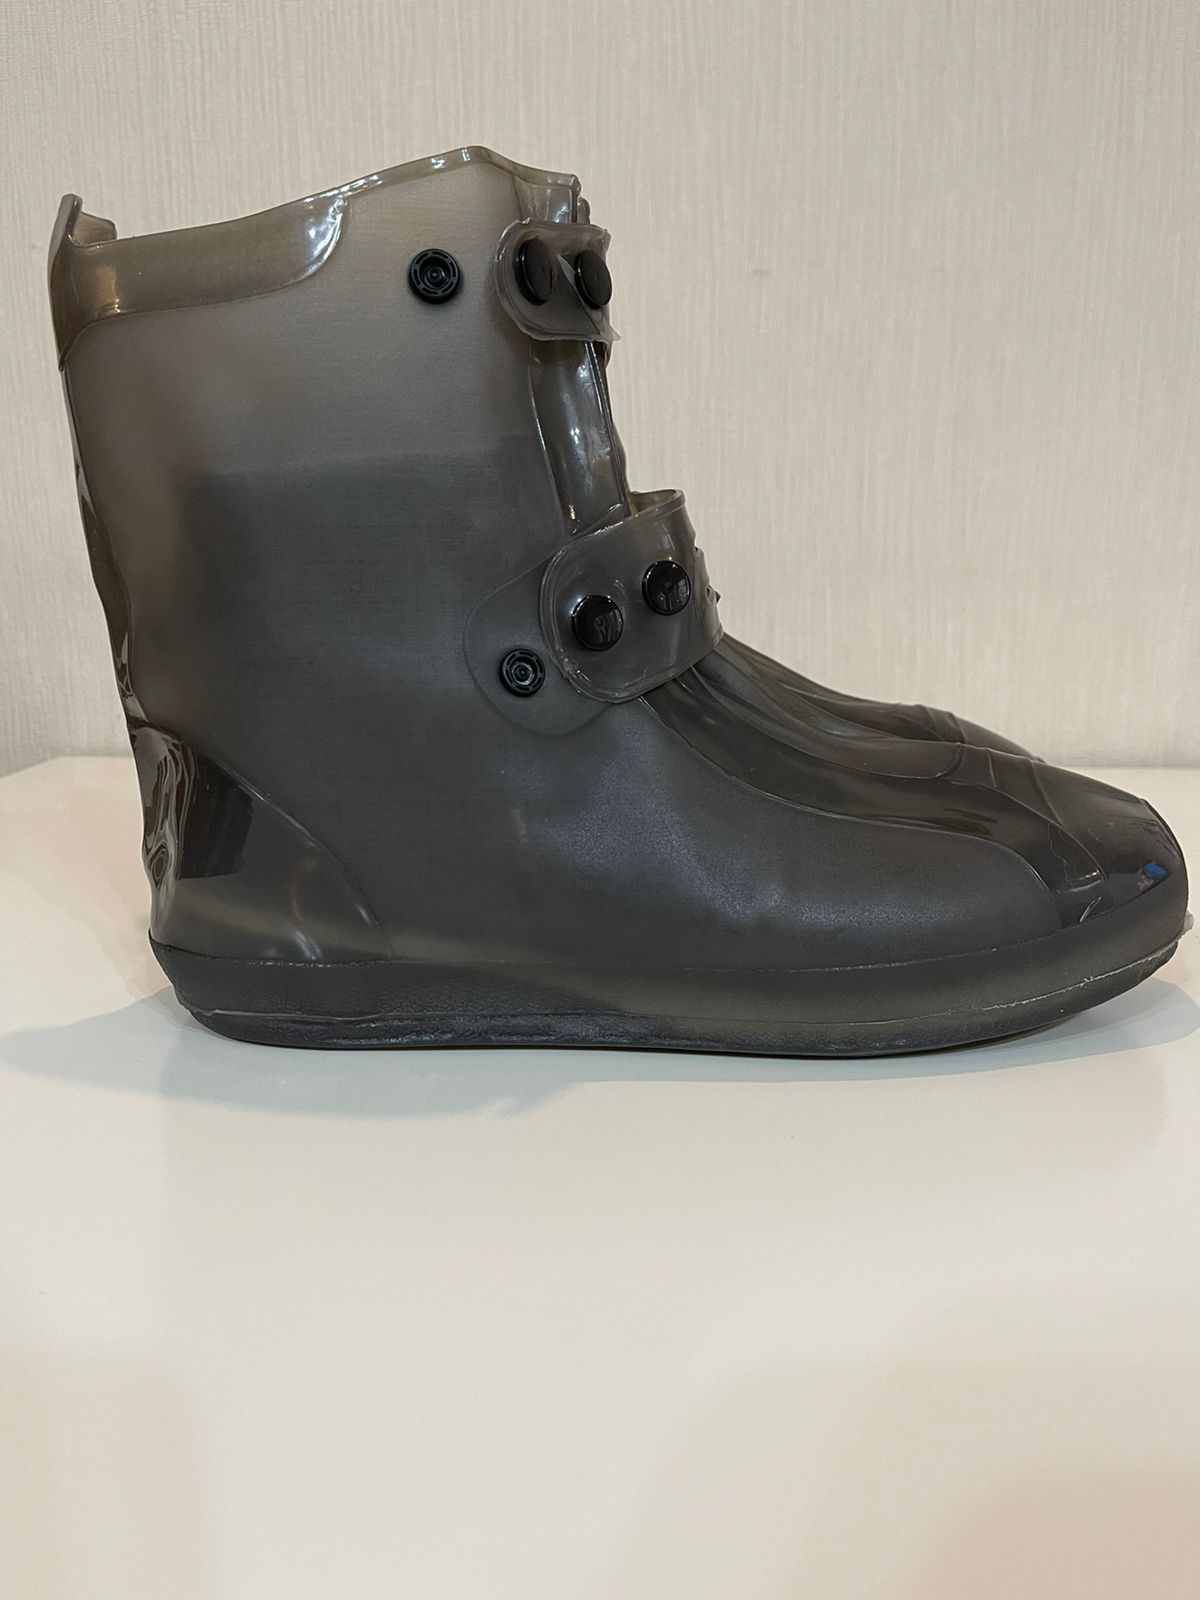 Новый защитный чехол от воды и грязи для обуви